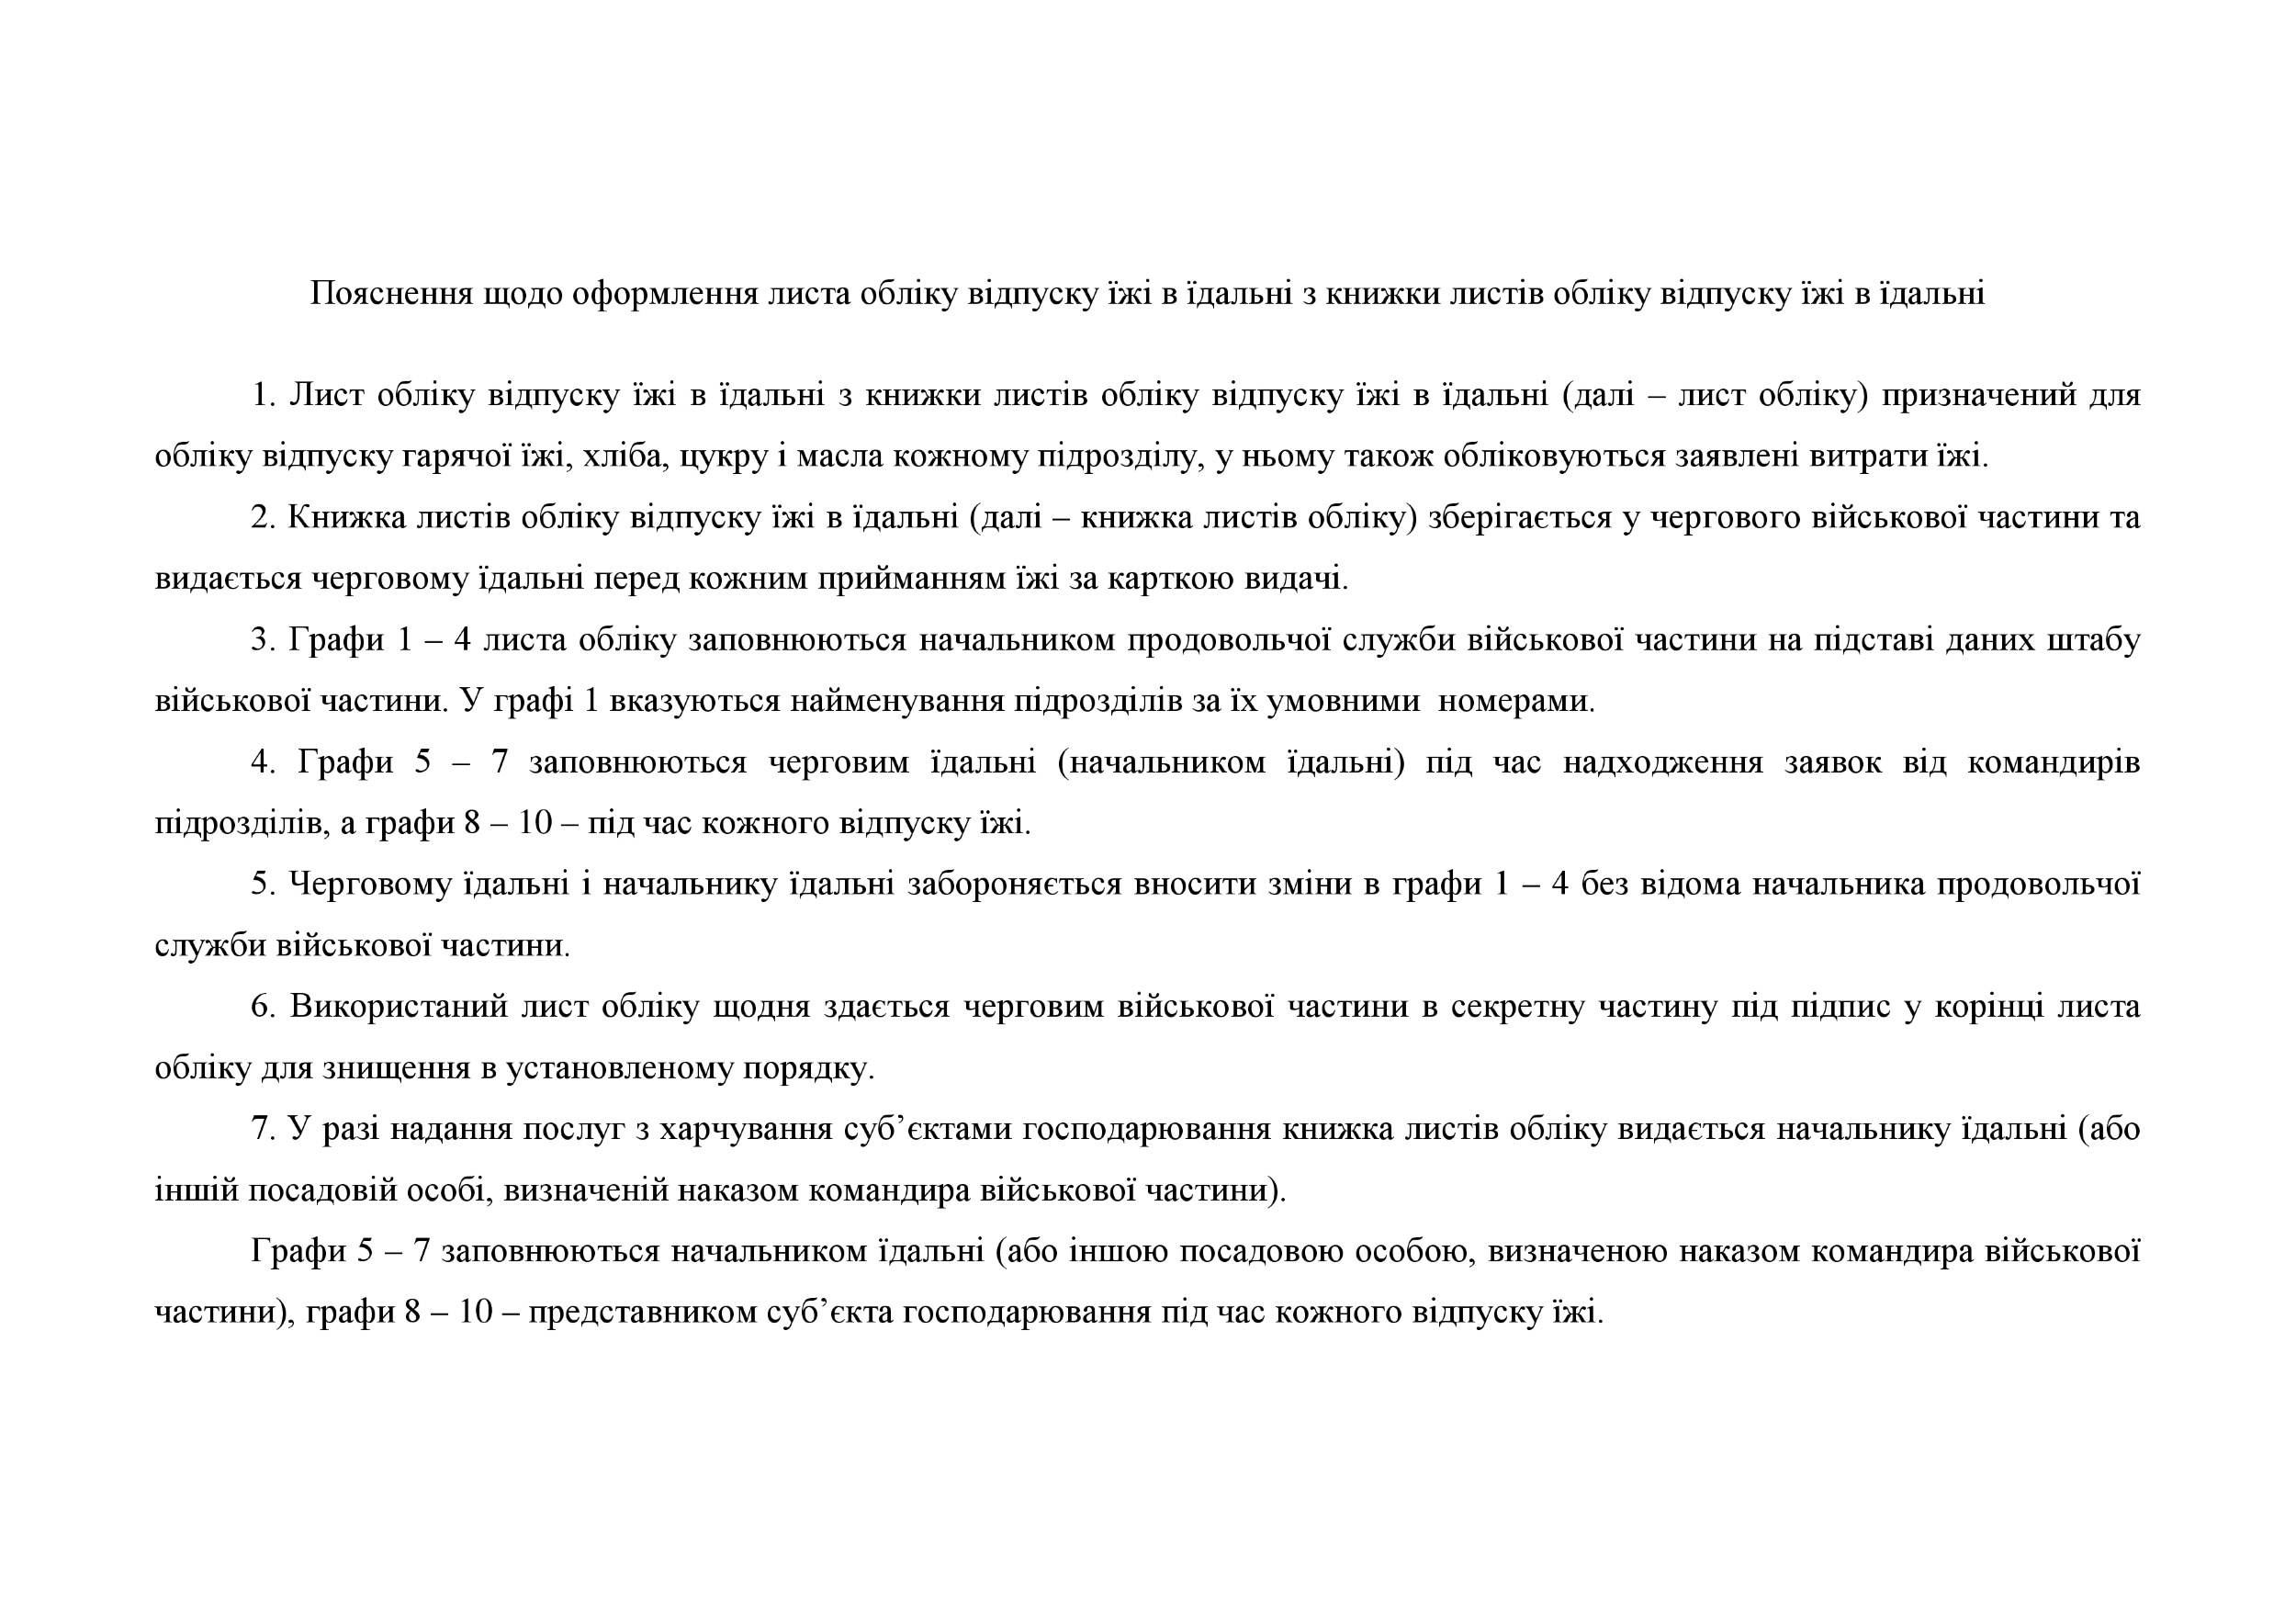 Книга листів обліку відпуску їжі в їдальні, додаток 91. Автор — Міністерство оборони України. 